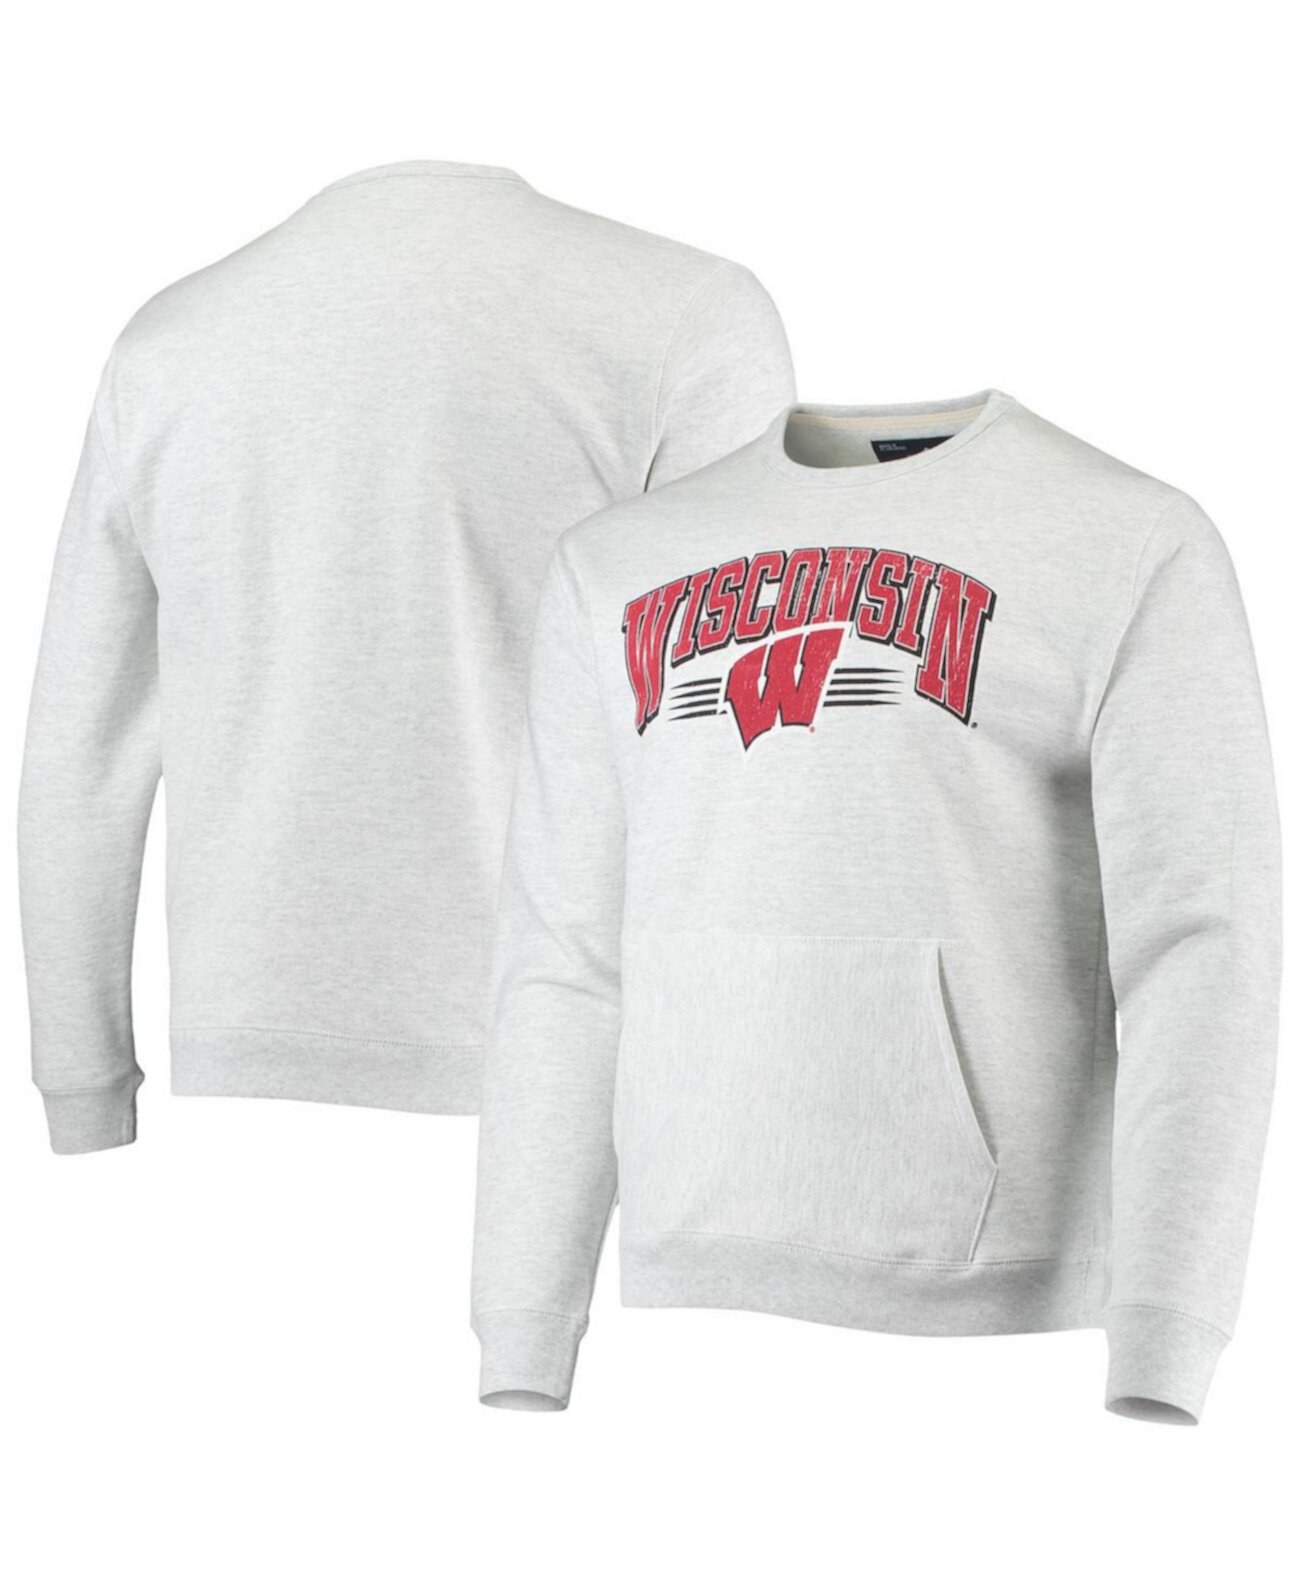 Мужская серая толстовка Wisconsin Badgers с карманом для старшеклассников League Collegiate Wear